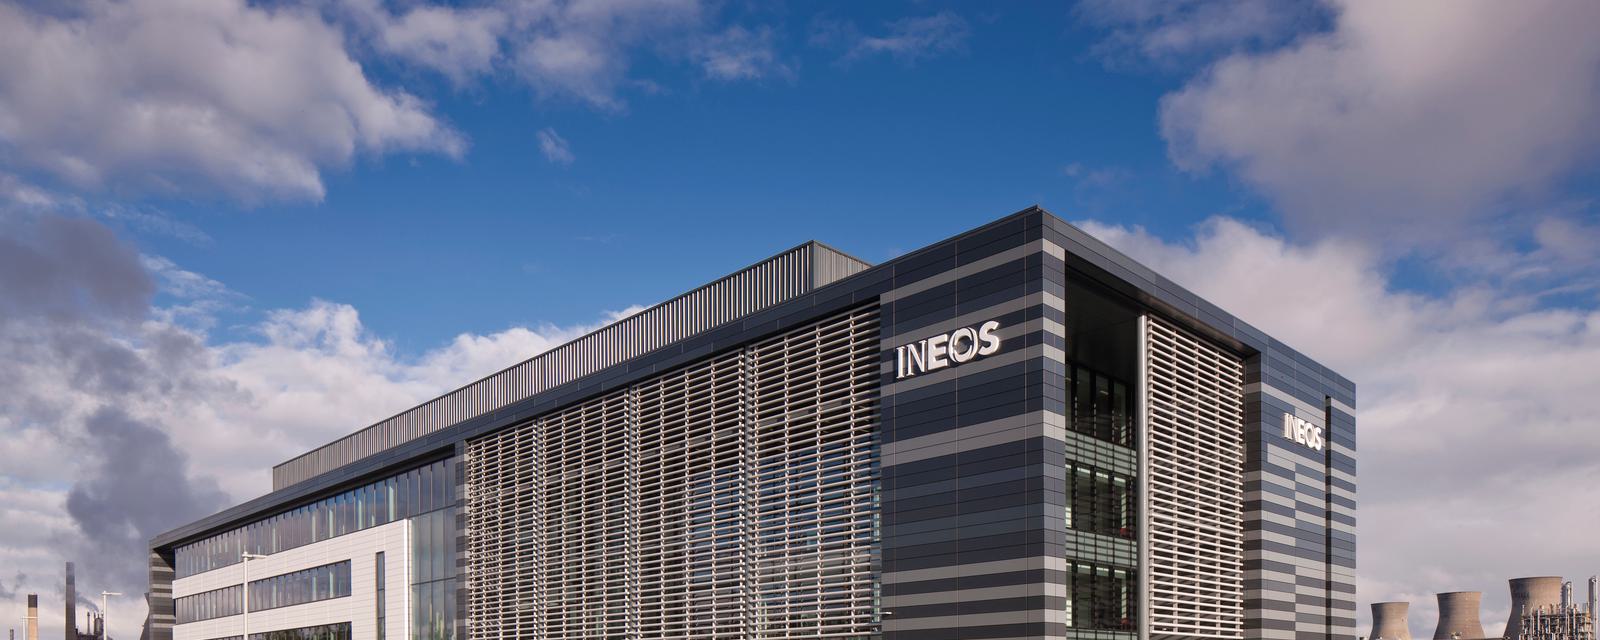 Ineos Headquarters